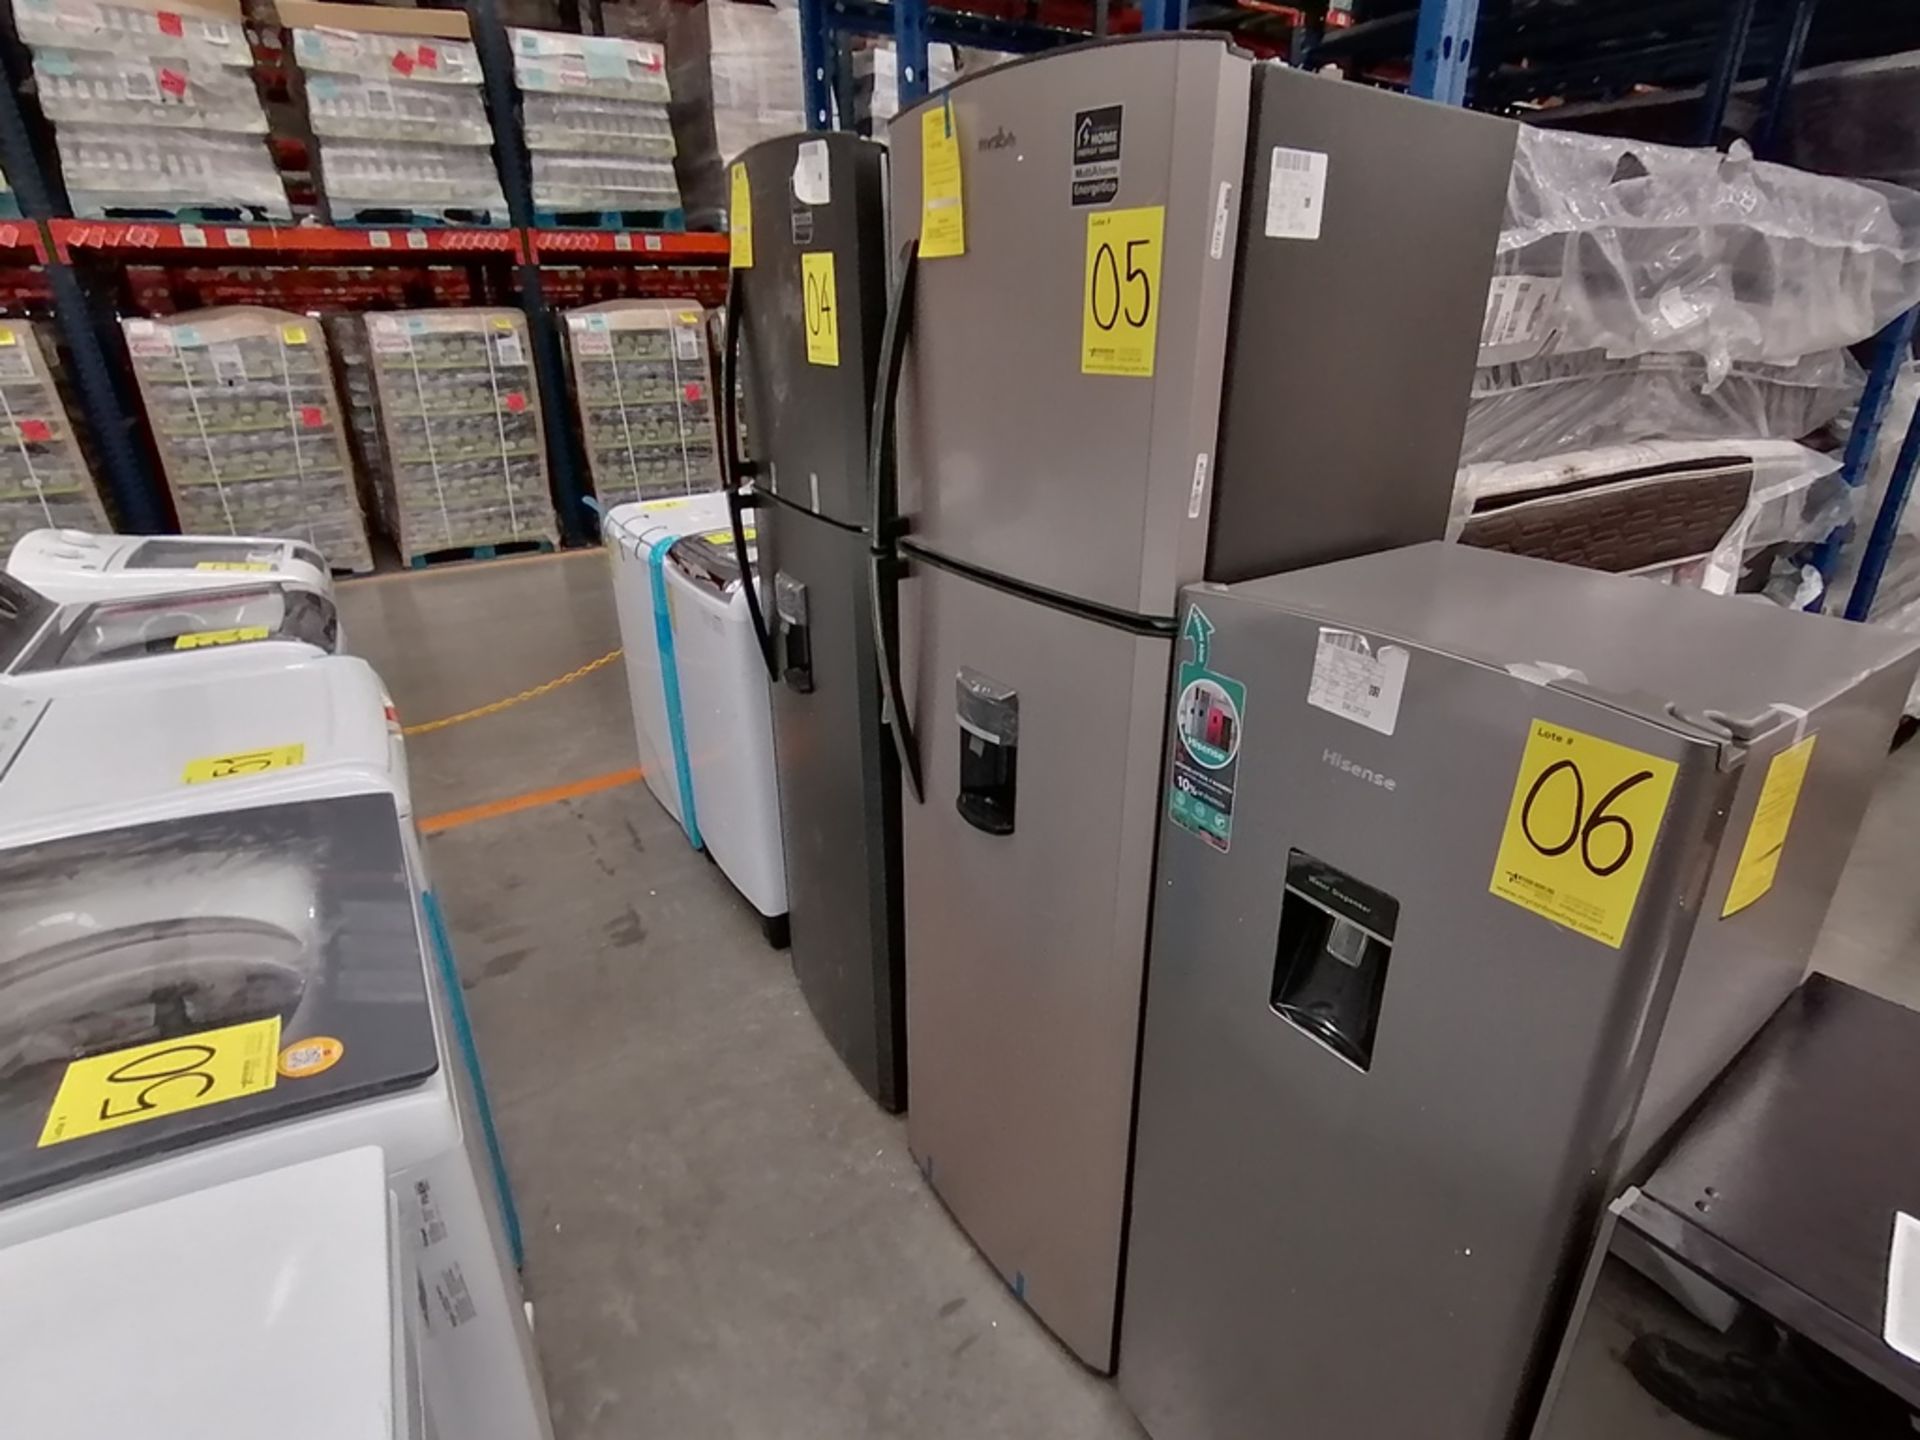 1 Refrigerador con dispensador de agua, Marca Mabe, Modelo RMA300FJMR, Serie 2111B711071, Color Gri